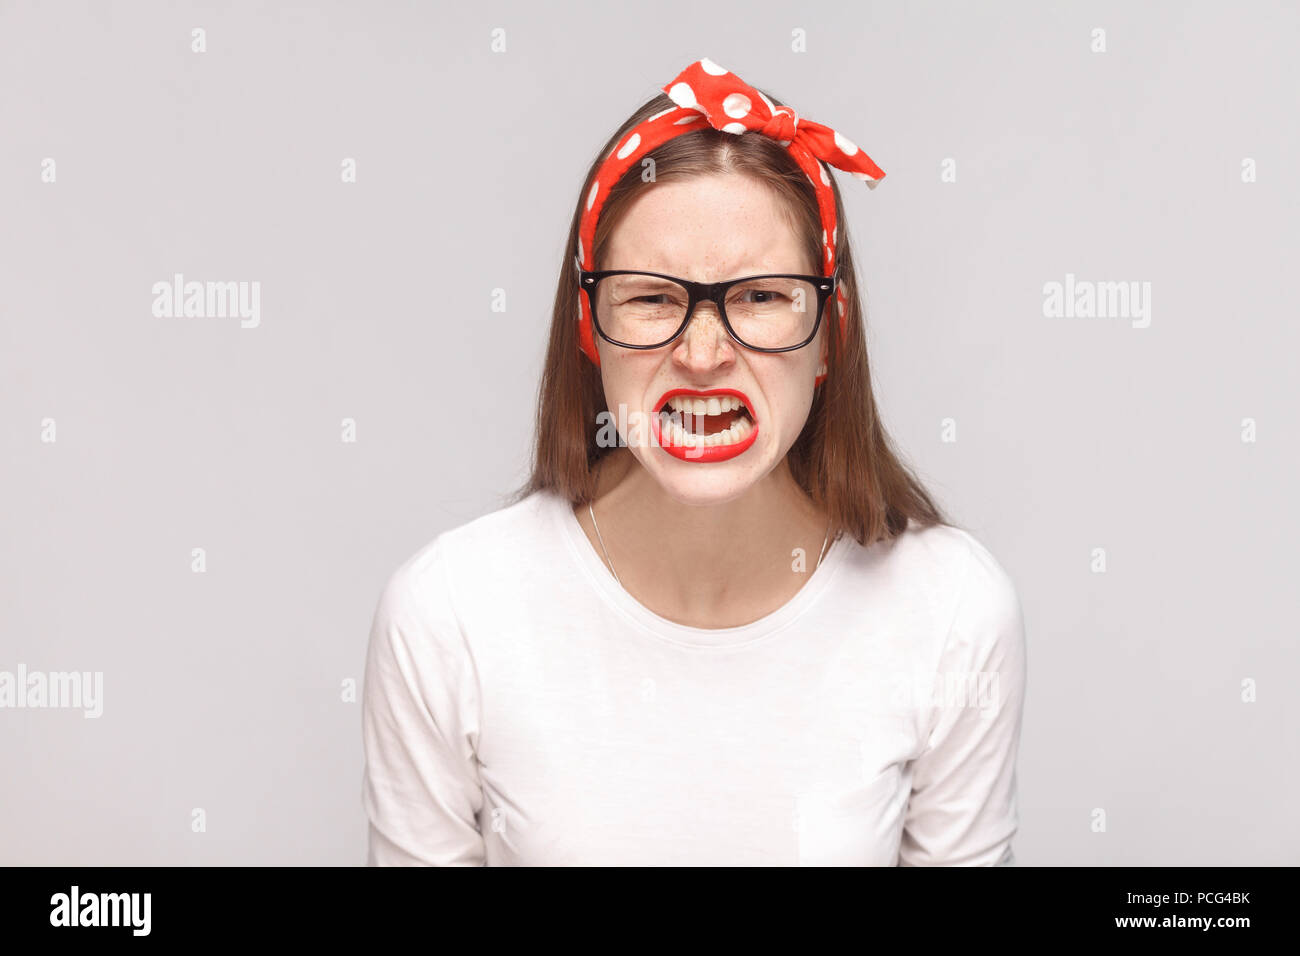 Wütend das Gesicht schreiend Portrait von Wut verrückt Bossy emotionale junge Frau im weißen T-Shirt mit Sommersprossen, schwarze Brille, rote Lippen und Kopfband. indoor Stockfoto